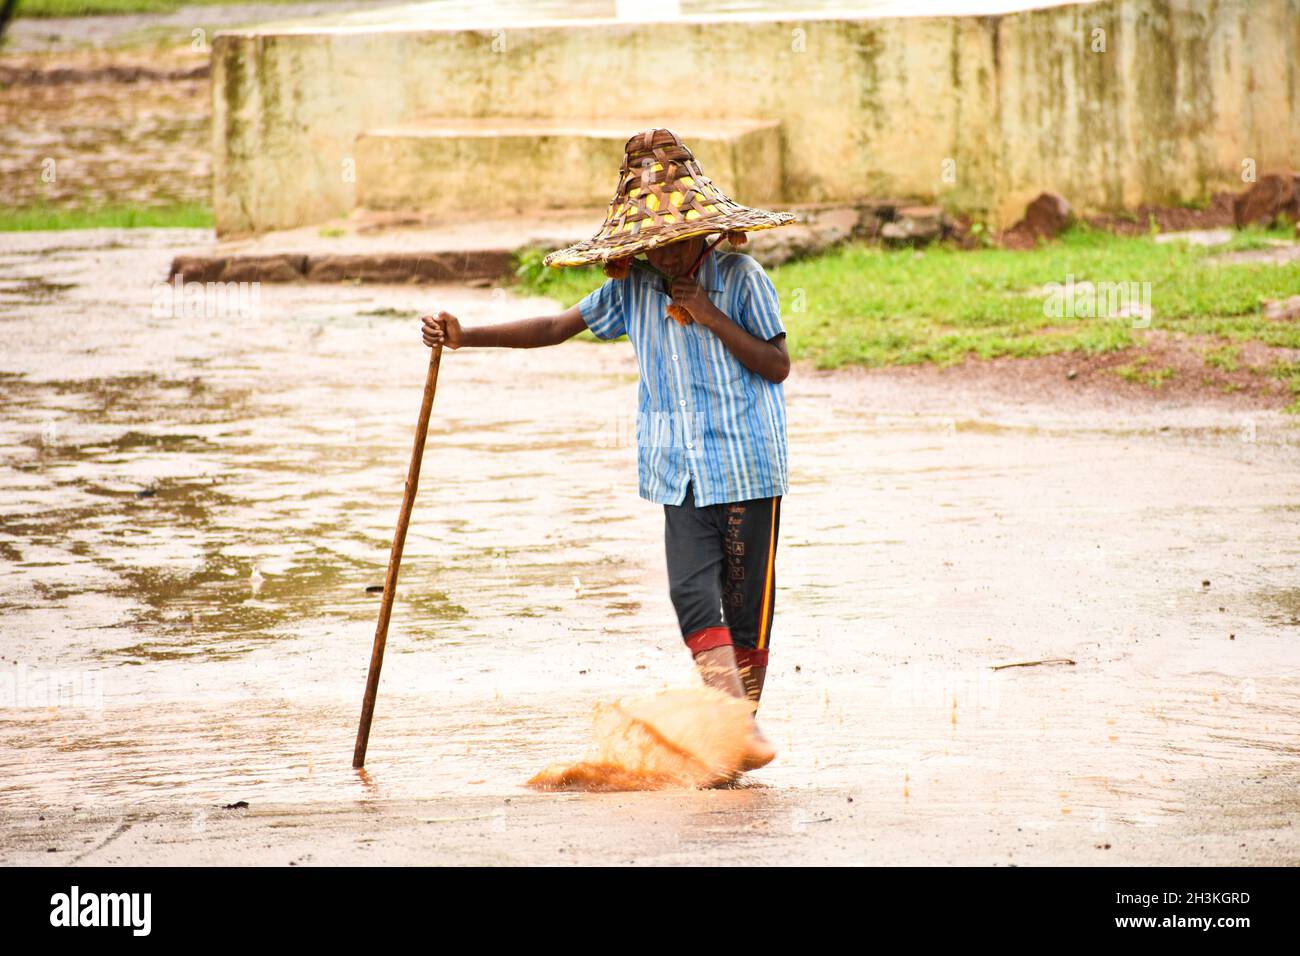 SURAJPUR, INDIEN - 01. Apr 2019: Ein kleiner Dorfjunge in einem Strohhut mitten auf der Straße, der während des Regens mit Wasser spielt Stockfoto